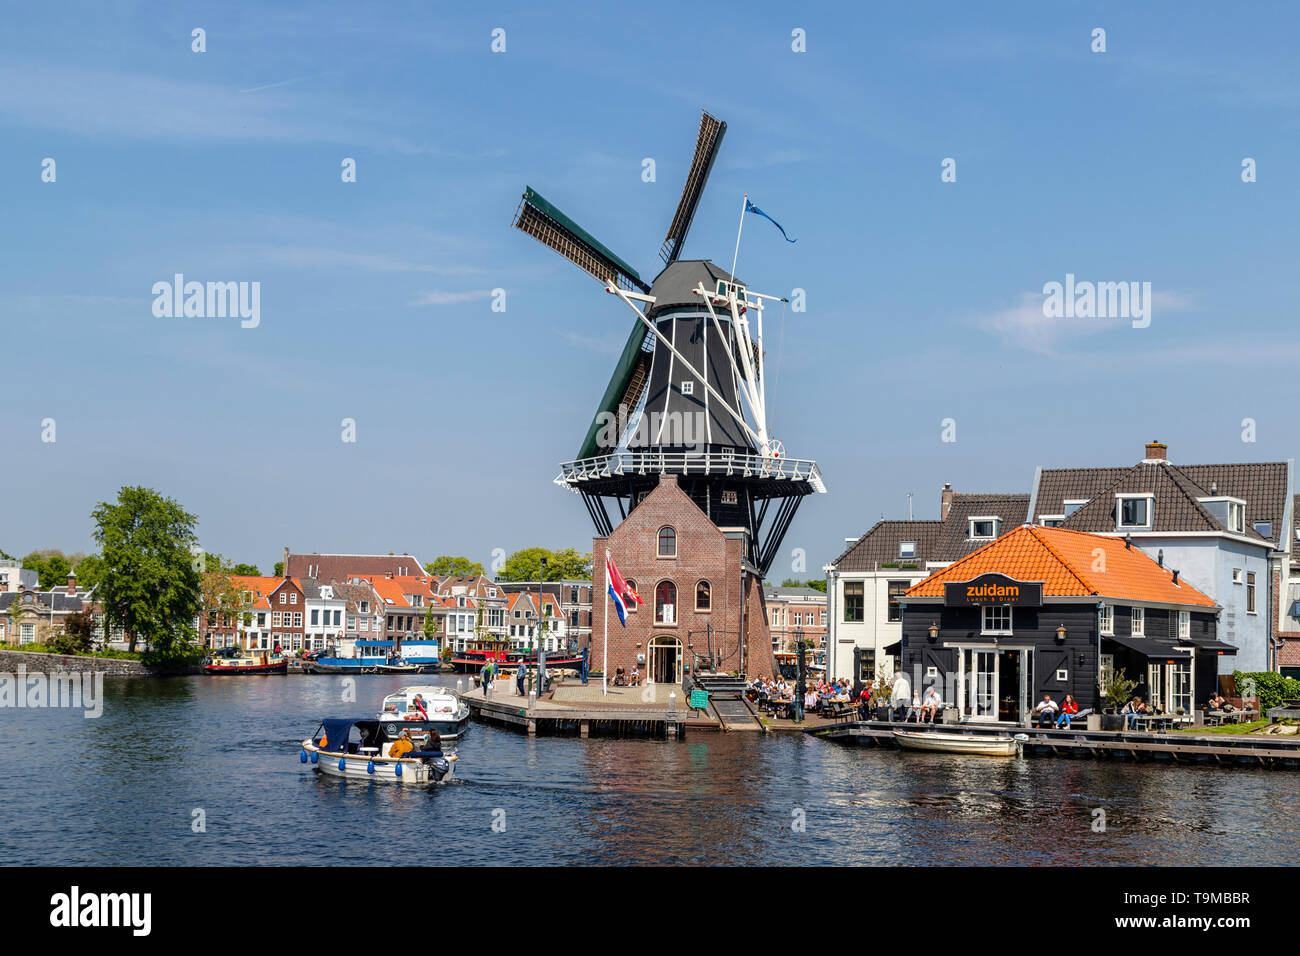 De Adriaan, un célèbre moulin et point focal sur la rivière Spaarne, Haarlem, Hollande du Nord, Pays-Bas Banque D'Images